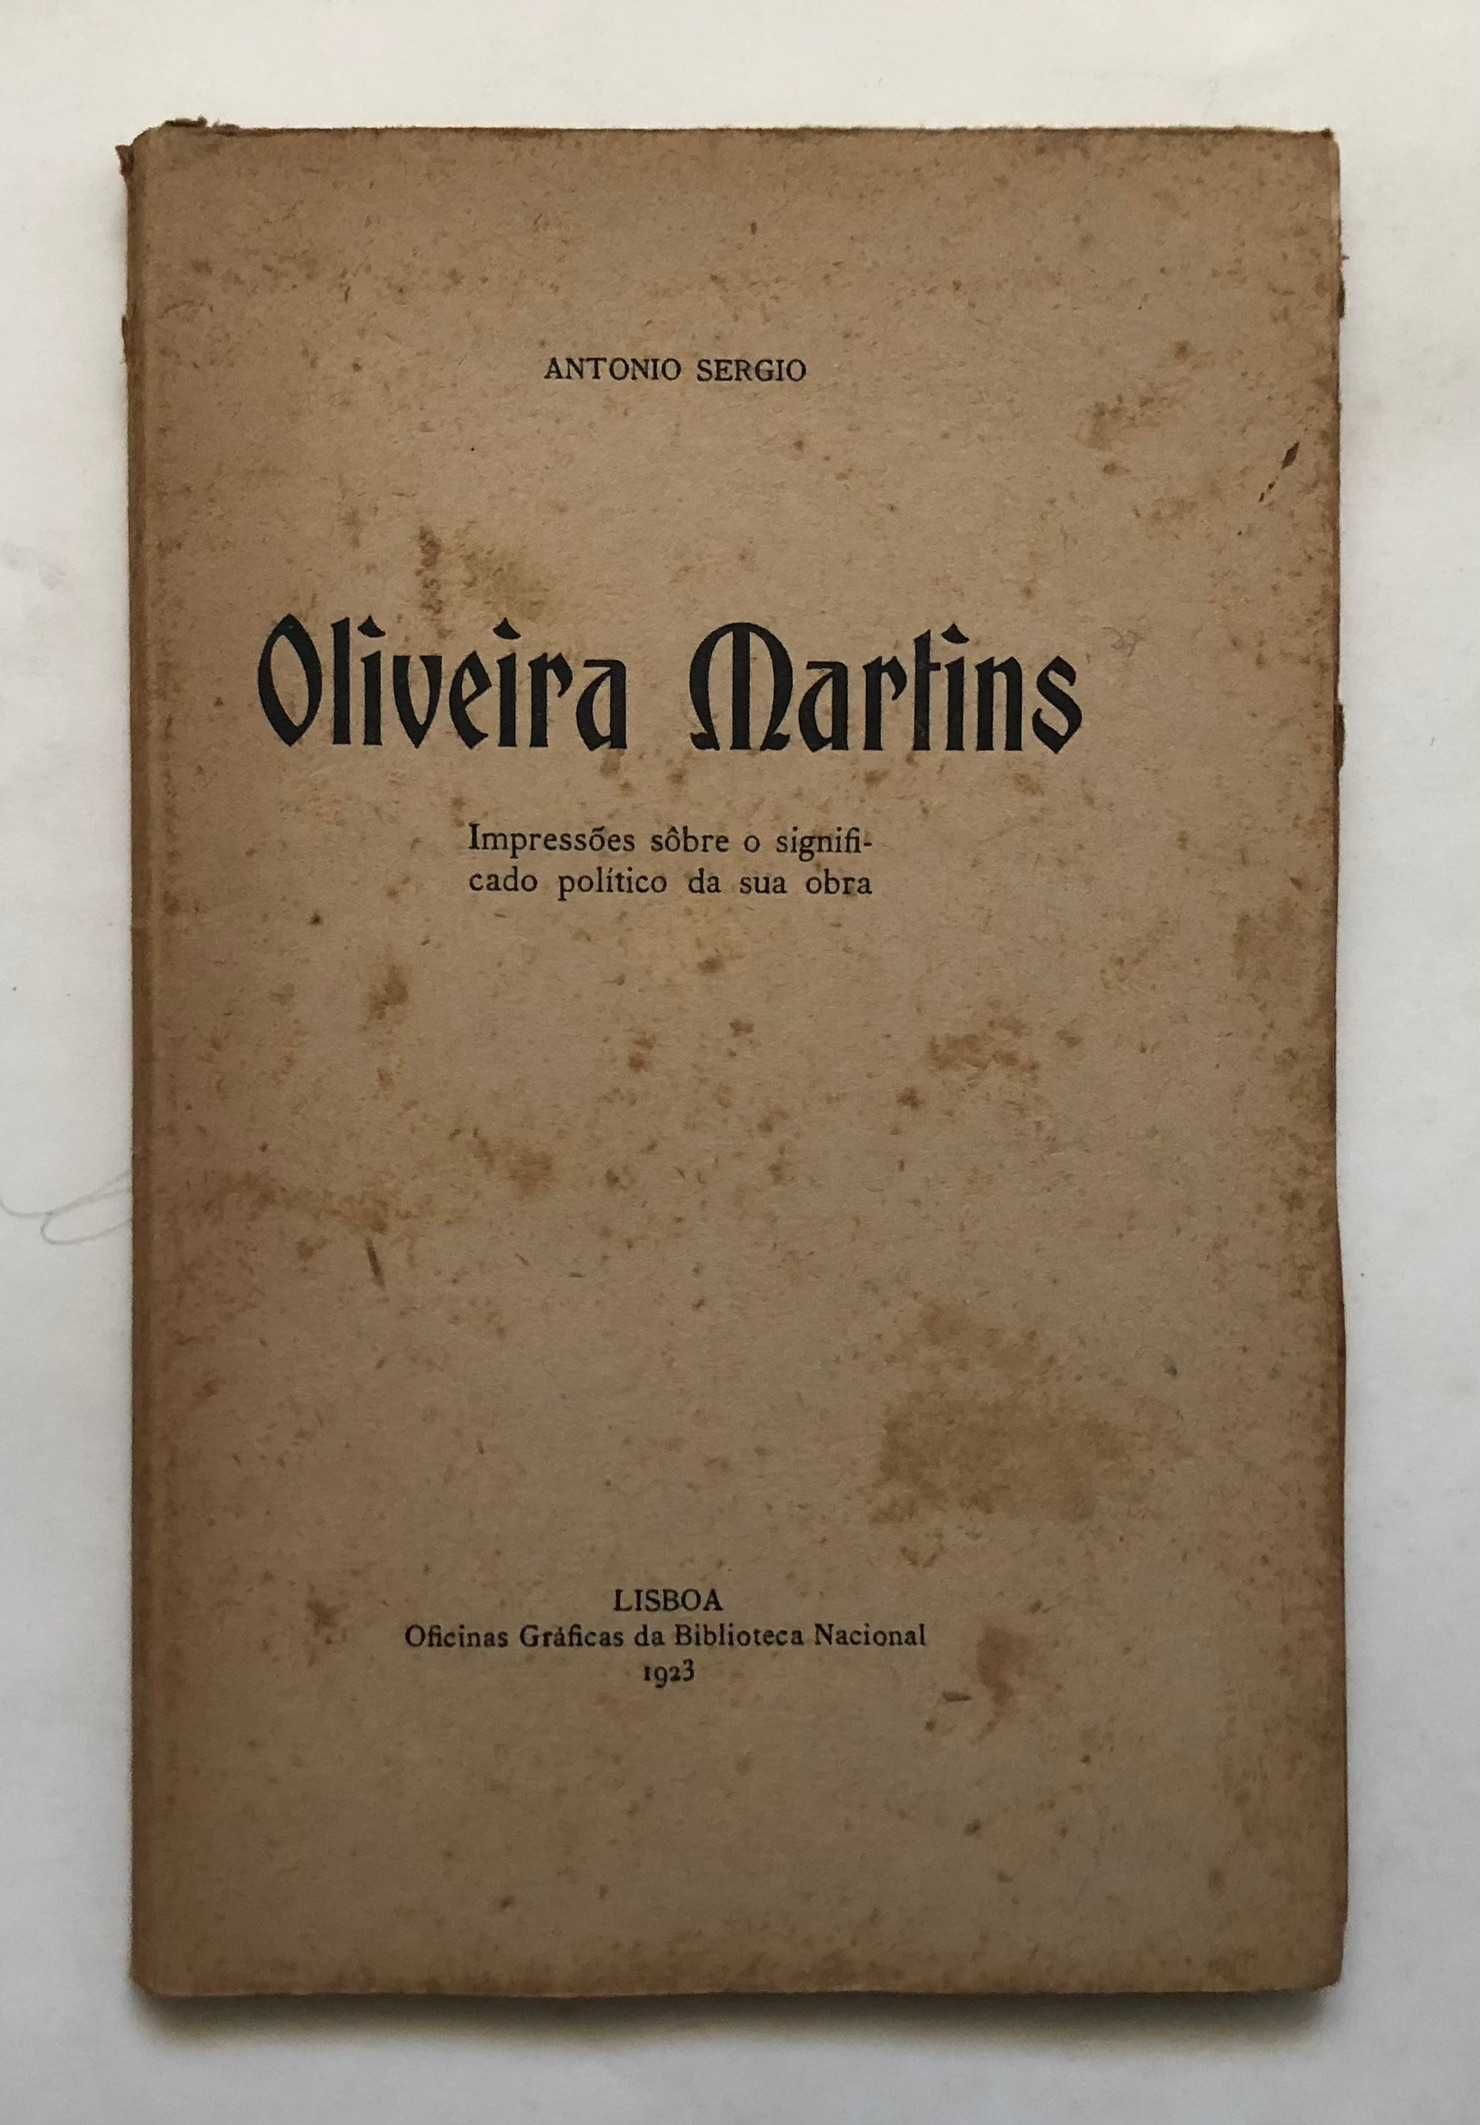 Oliveira Martins - Impressões sobre o significado político da sua obra